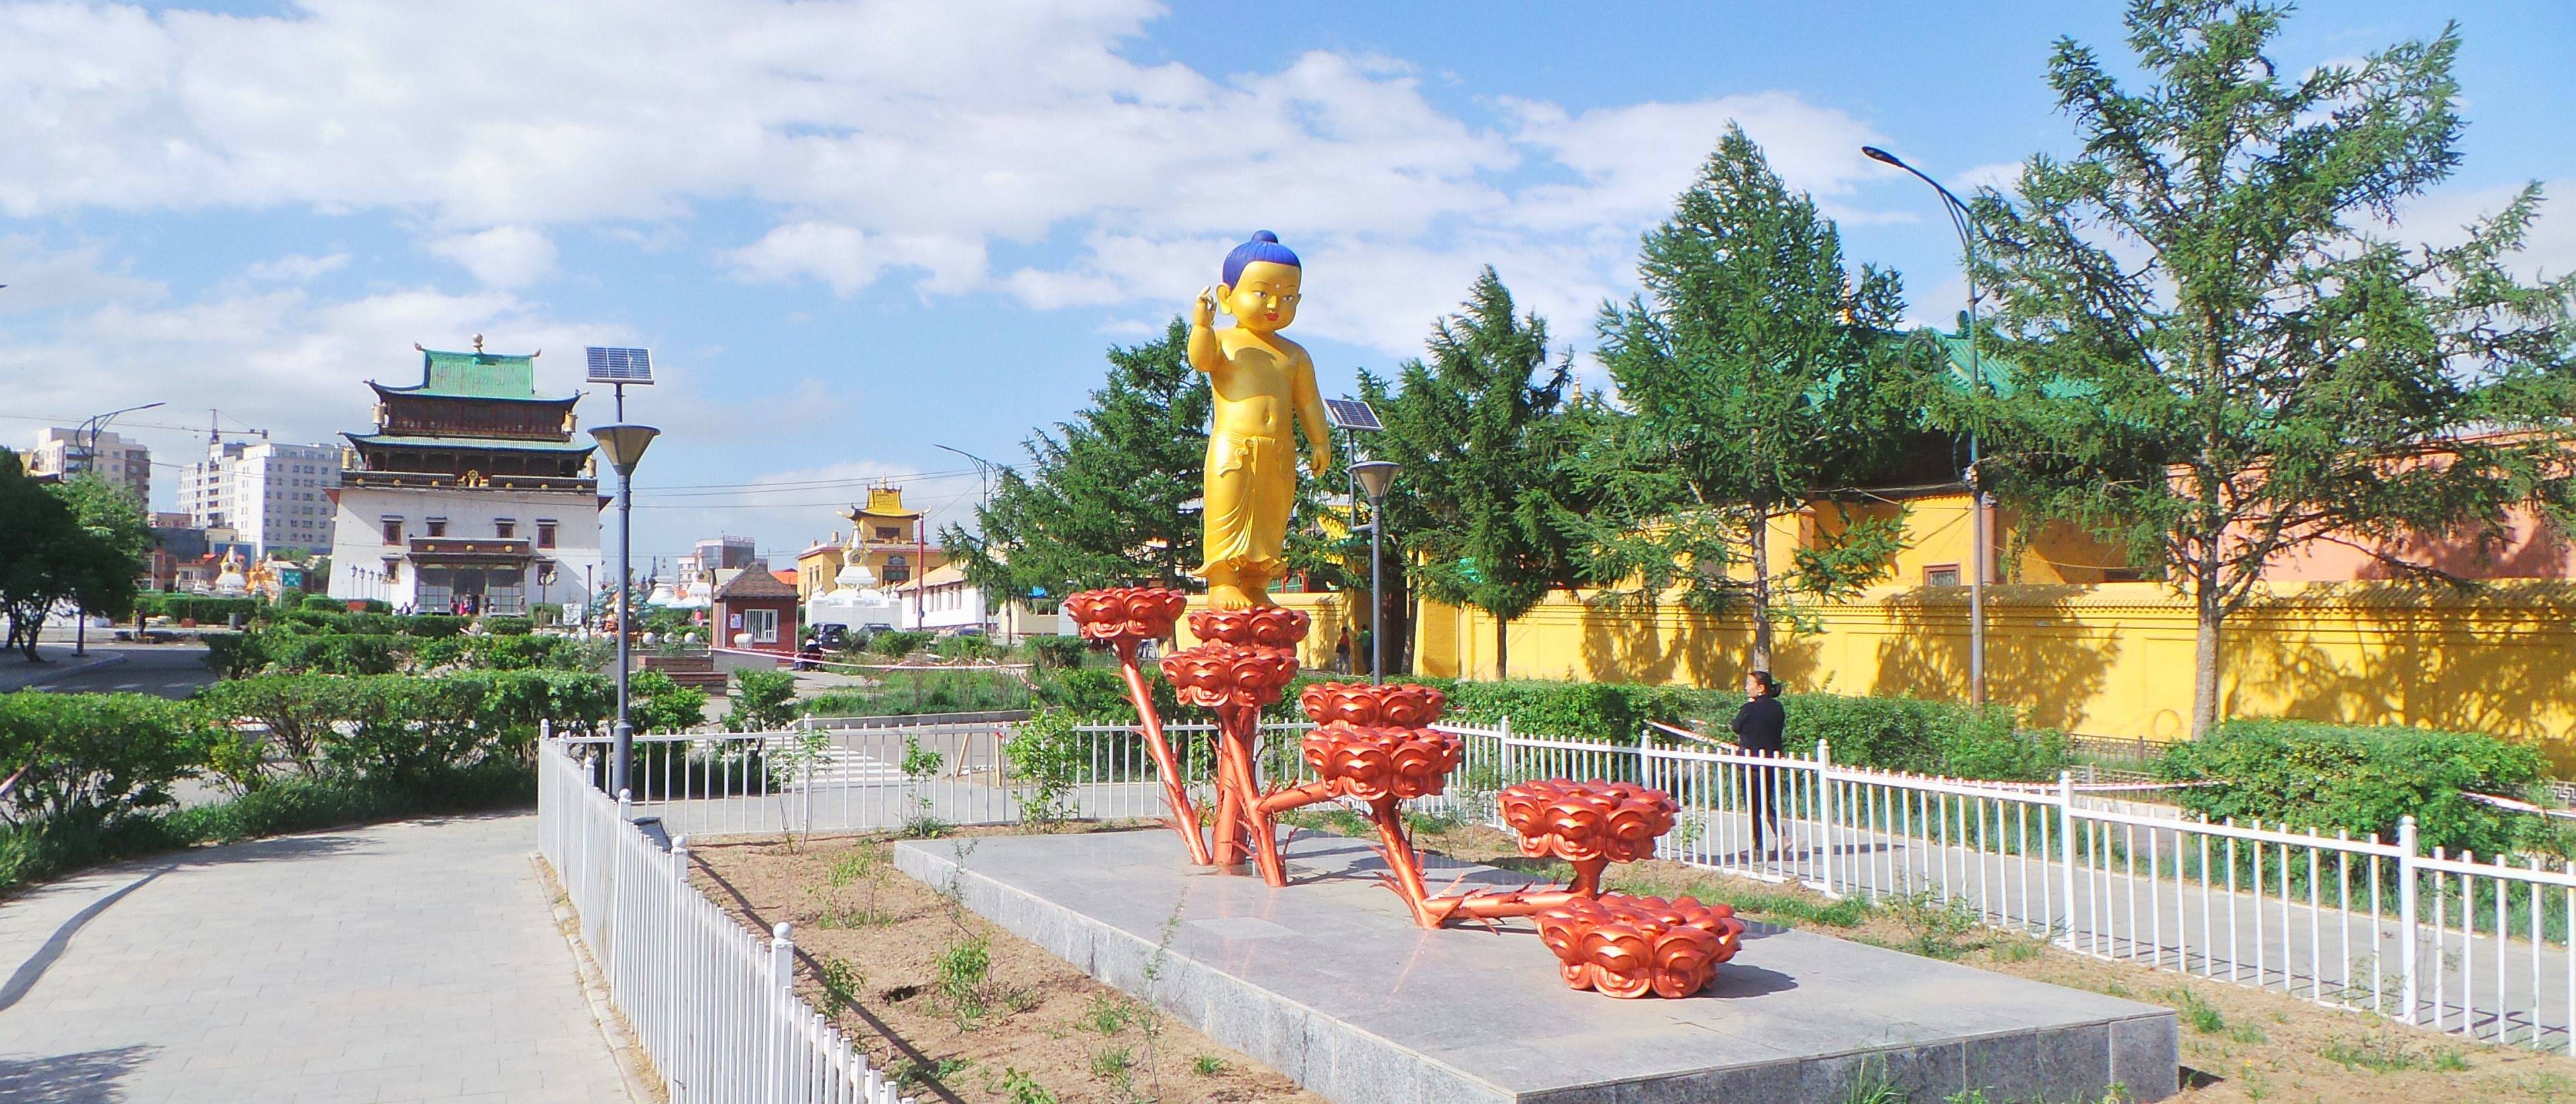 Bienvenue à Oulan-Bator, capitale de la Mongolie